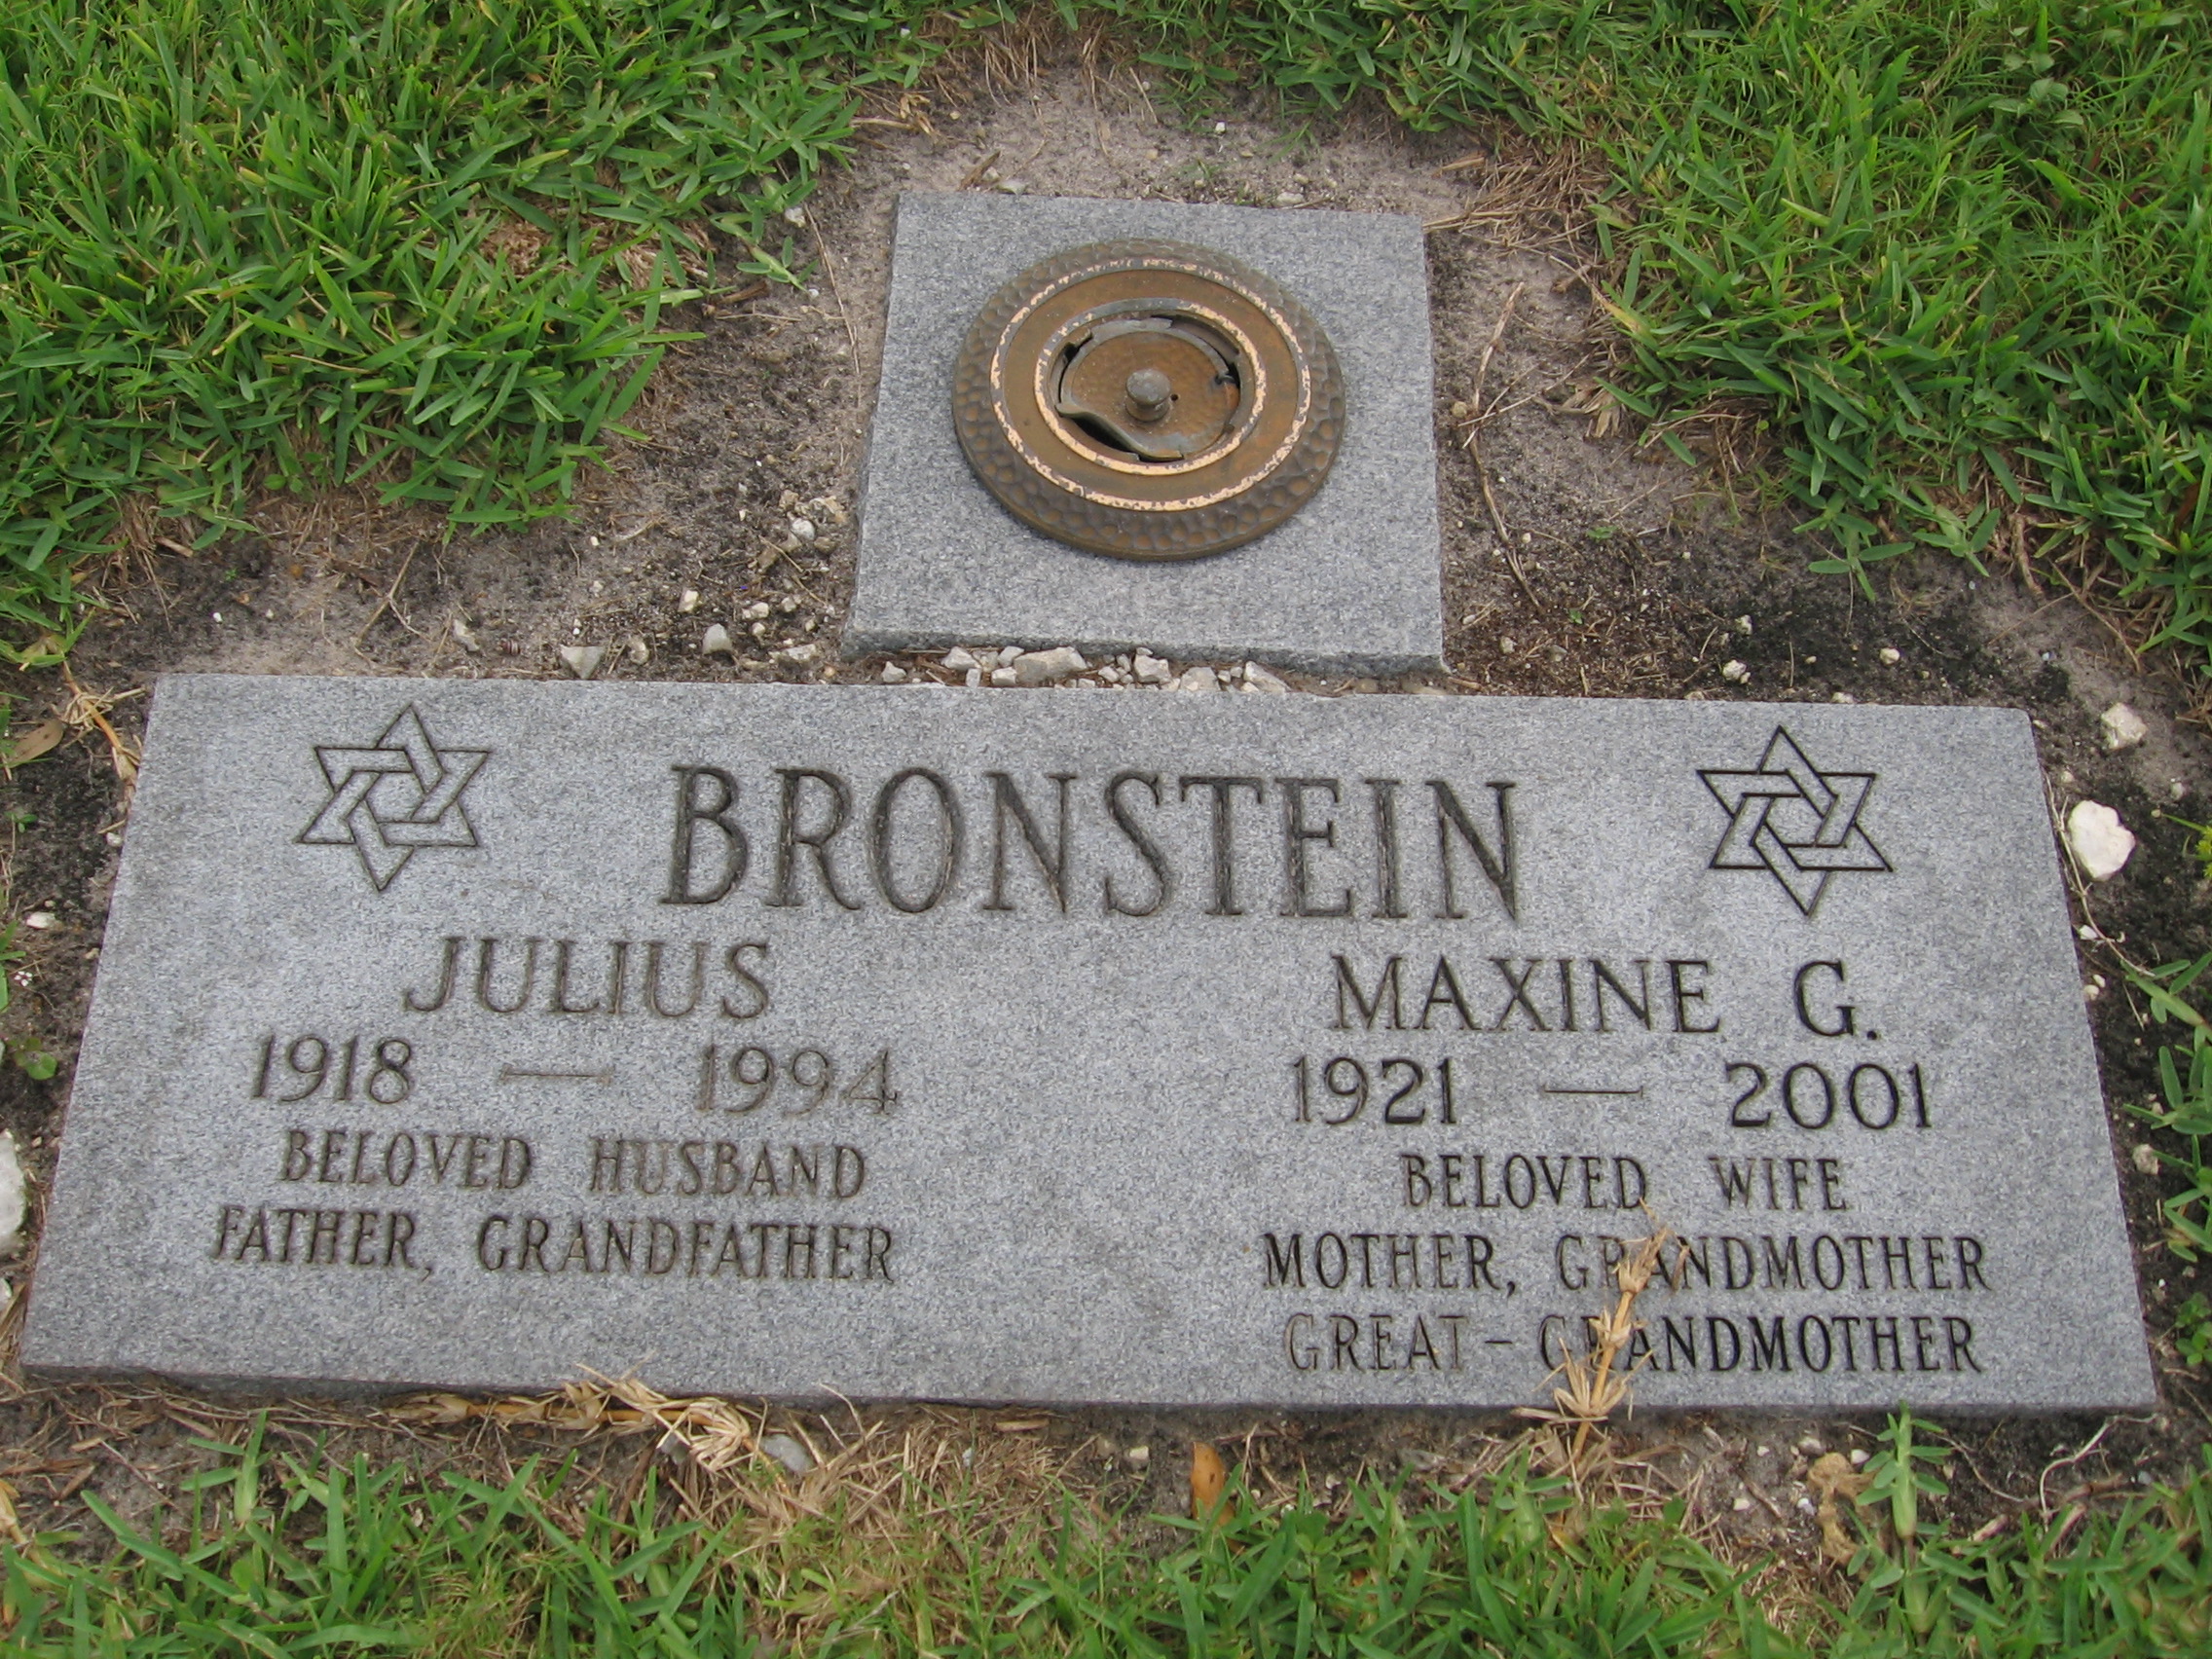 Julius Bronstein